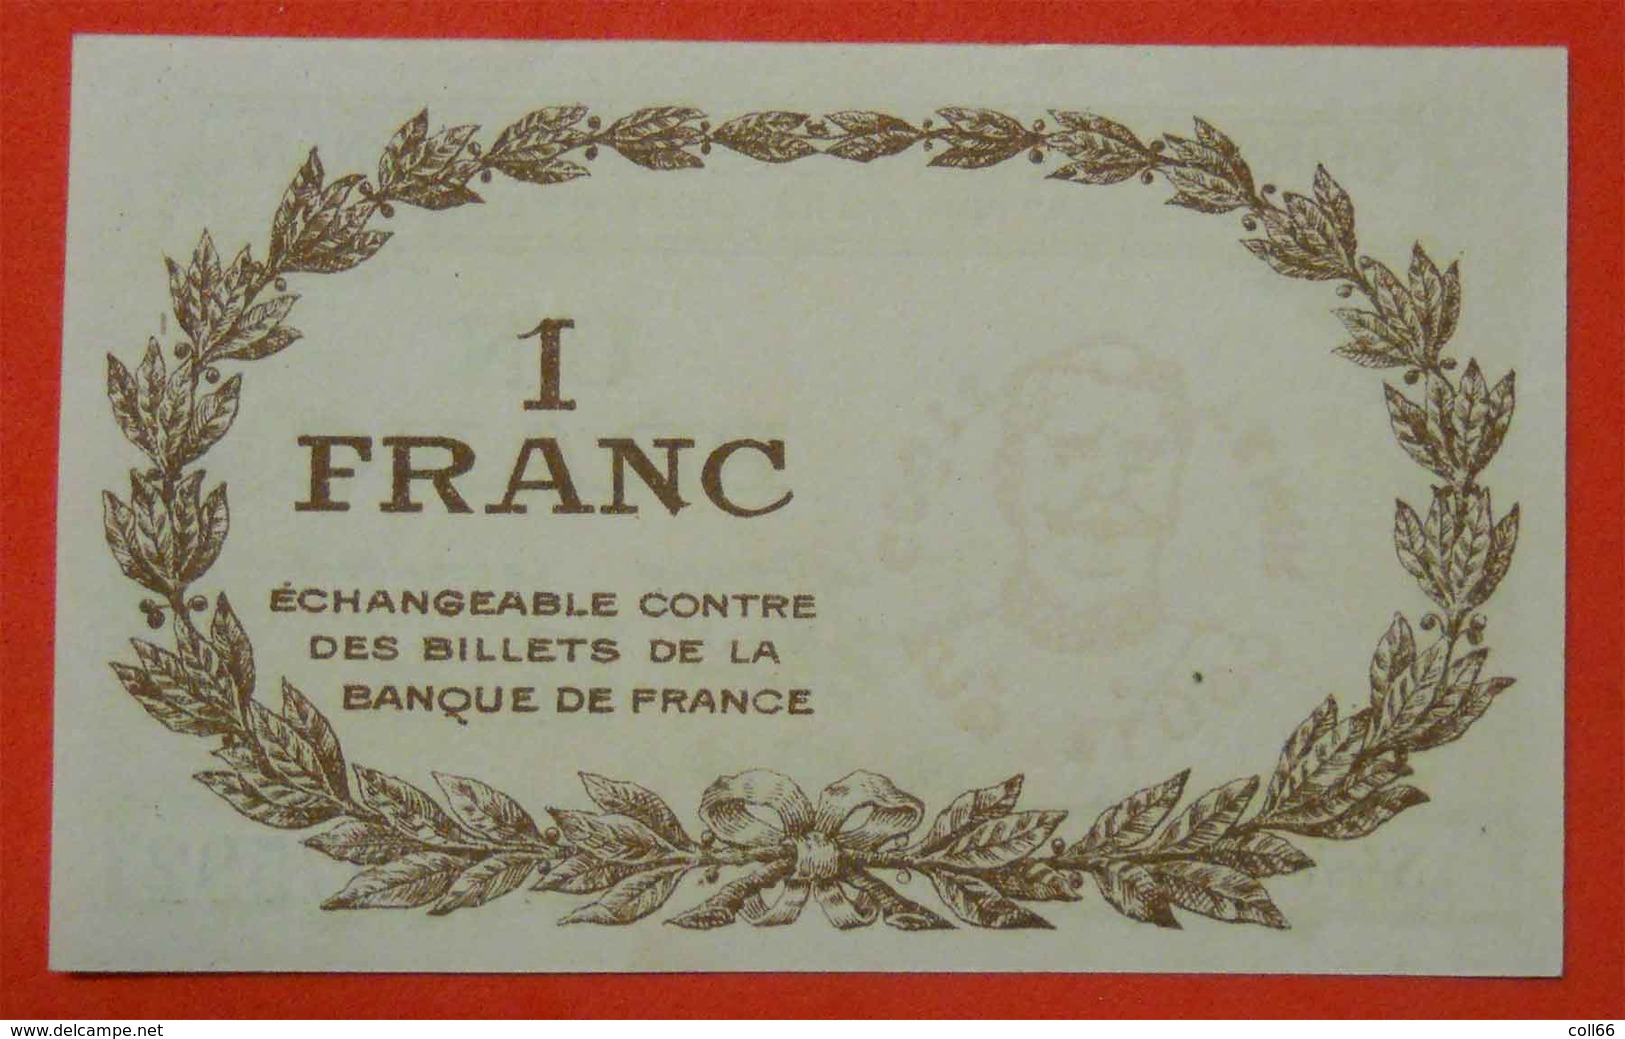 1918 Ww1 Billet Chambre Commerce Perpignan Maréchal Joffre Imp Morer Nenezet Perpignan 1 Franc  66 PO Catalan - War 1914-18